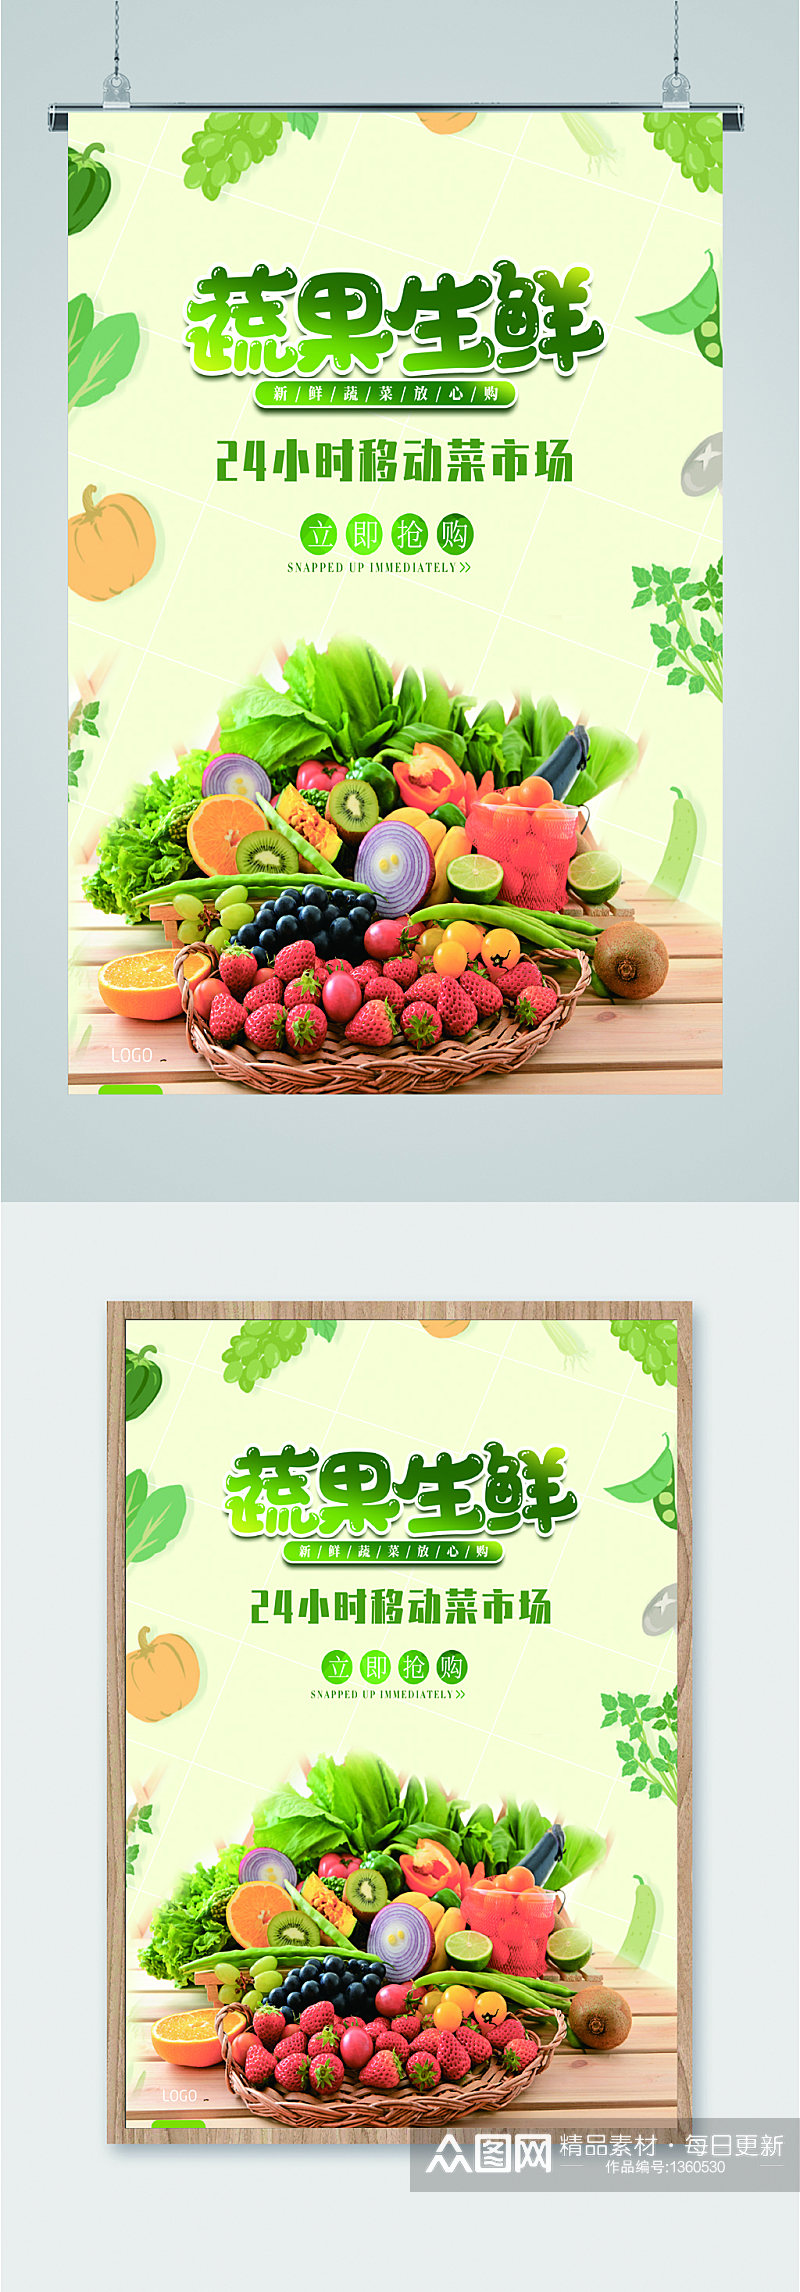 蔬果生鲜促销海报素材